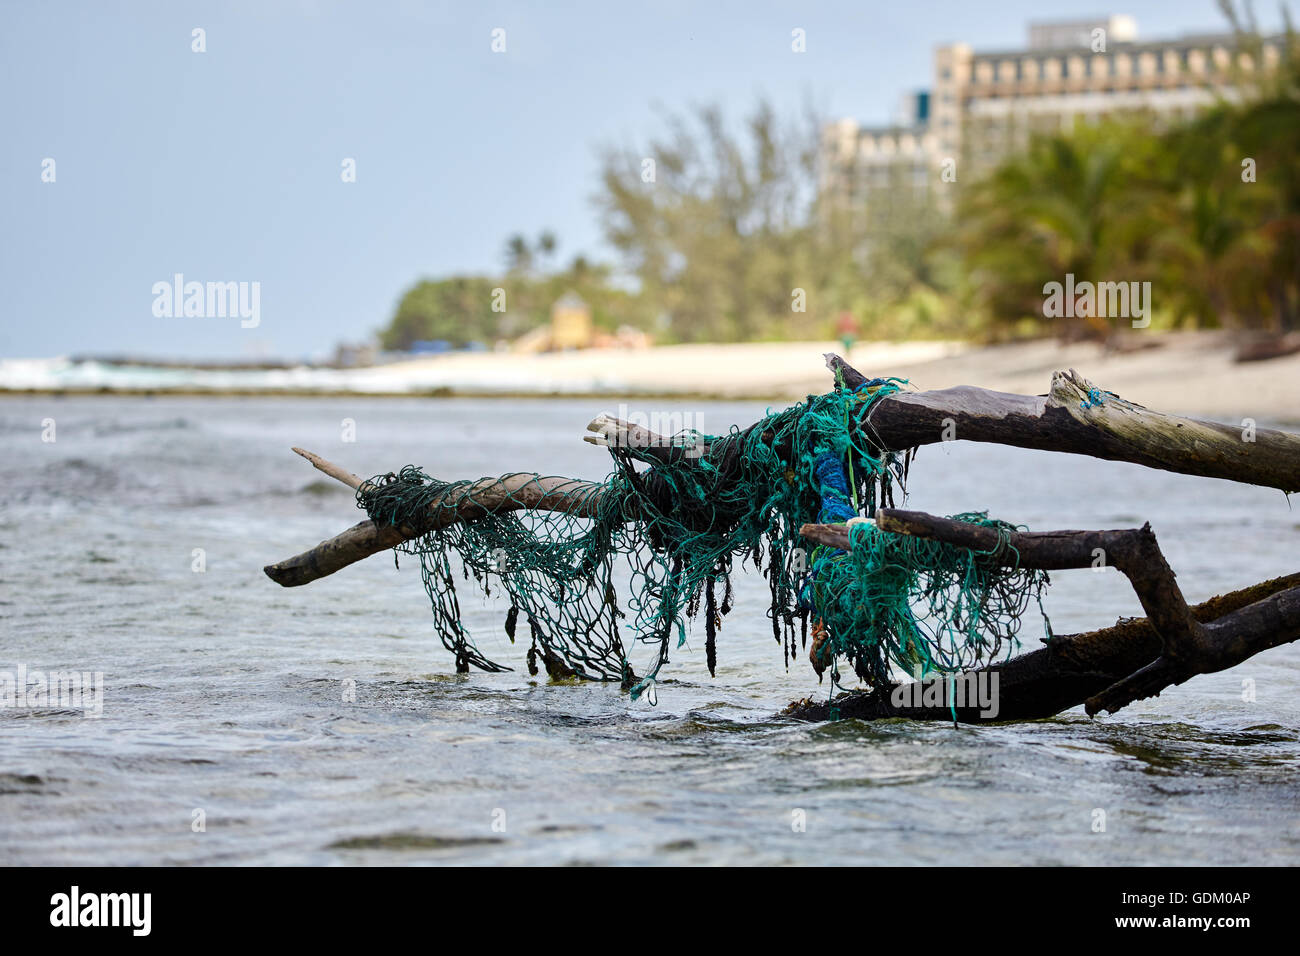 Le Piccole Antille Barbados parrocchia Saint Michael west indies capitale Bridgetown Drill Hall beach albero caduto carrello in acqua fis Foto Stock